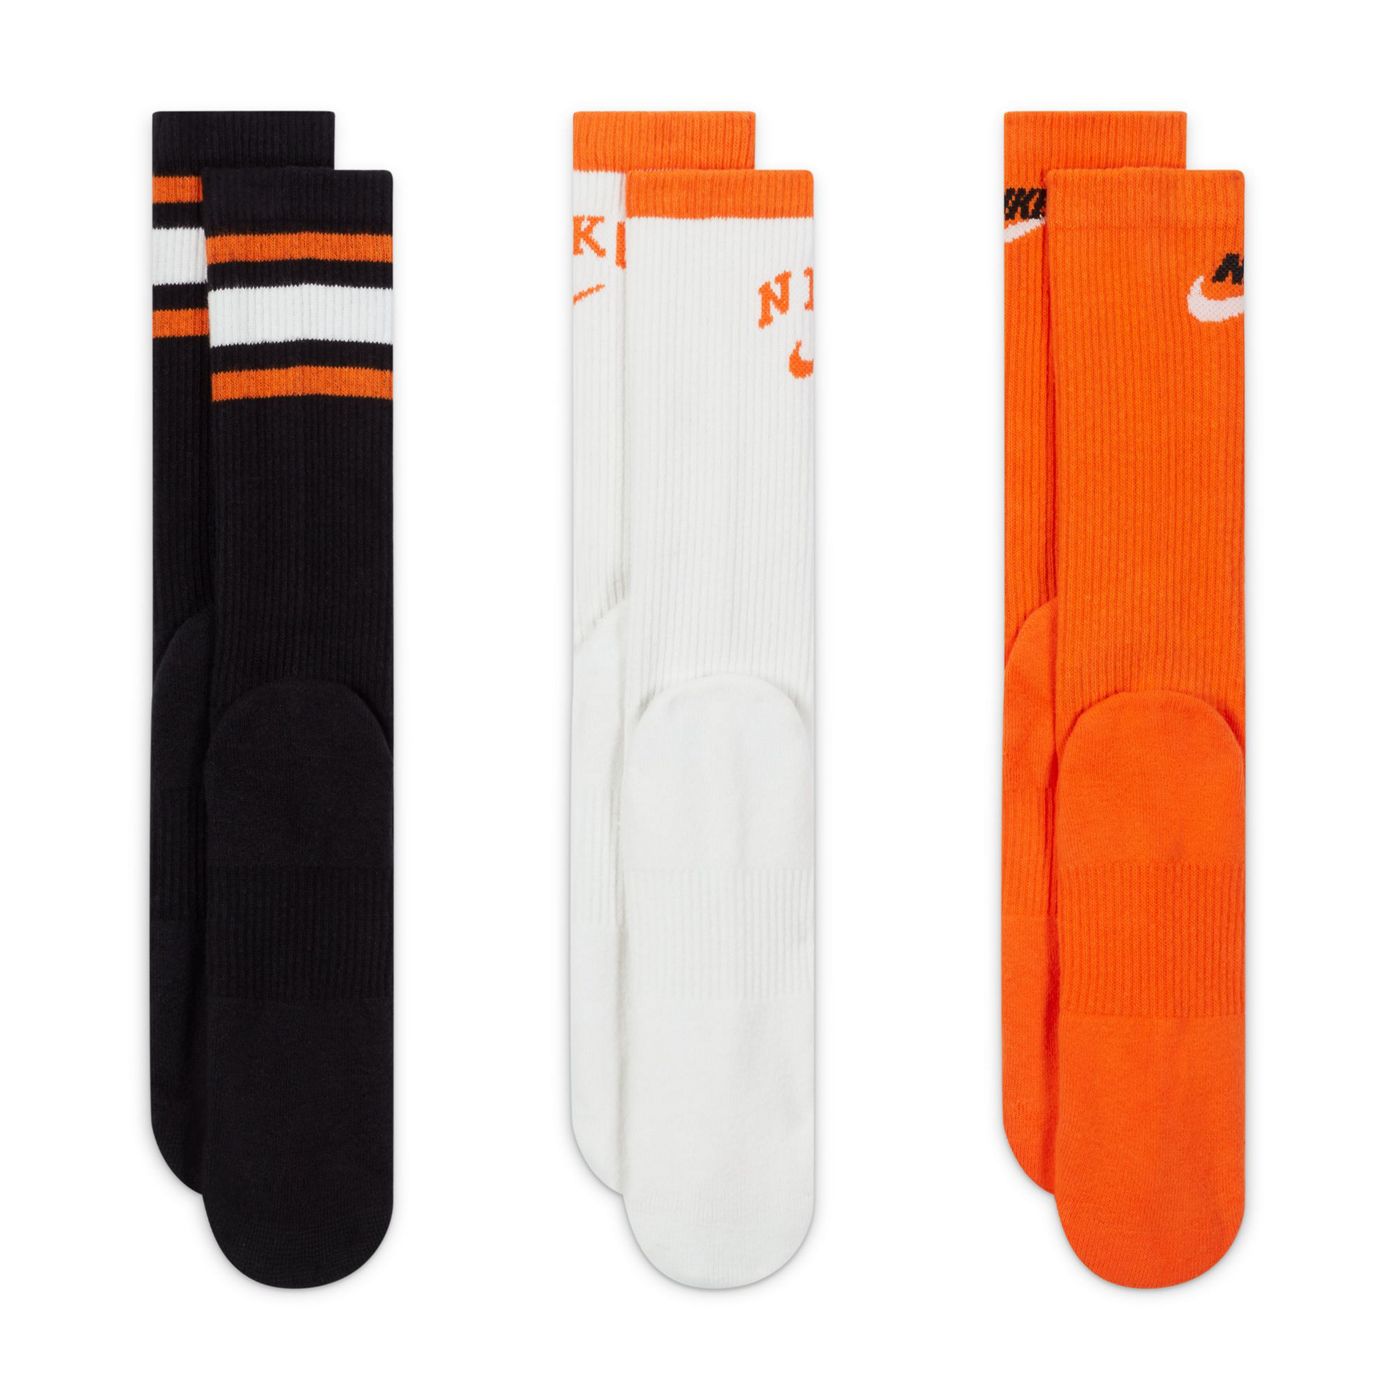 Nike Training unisex cushioned 3 pack logo crew sock in black,white and orange